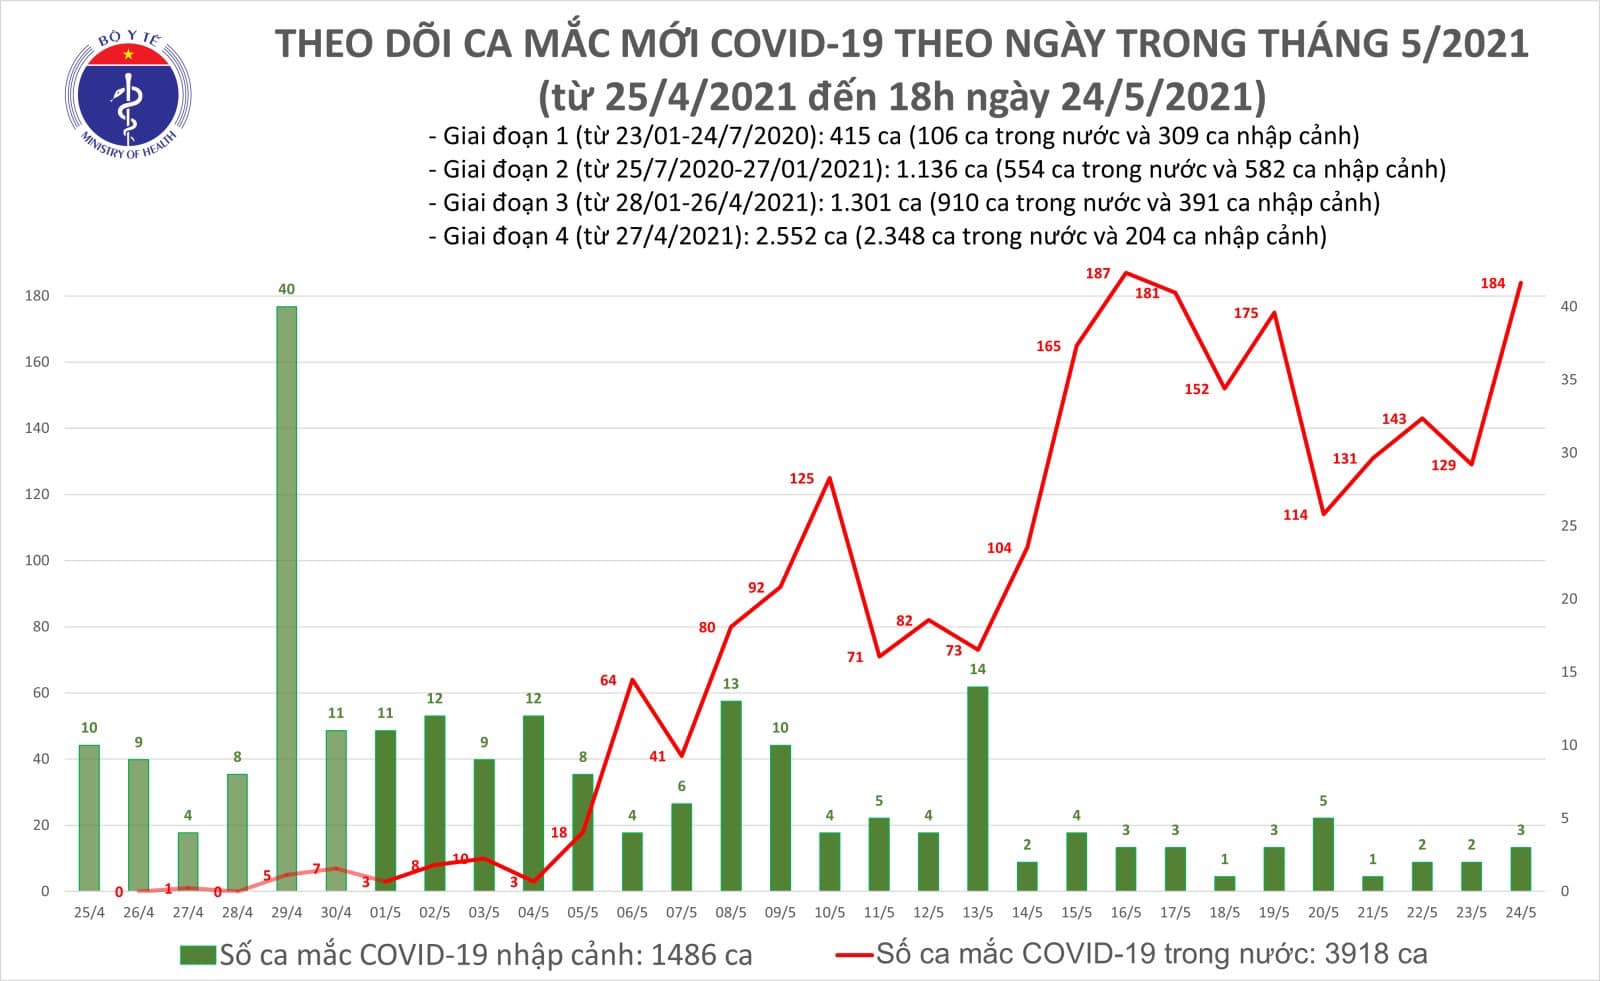 Tối 24/5: Thêm 95 ca mắc COVID-19 trong nước, Bắc Giang và Bắc Ninh chiếm 77 ca